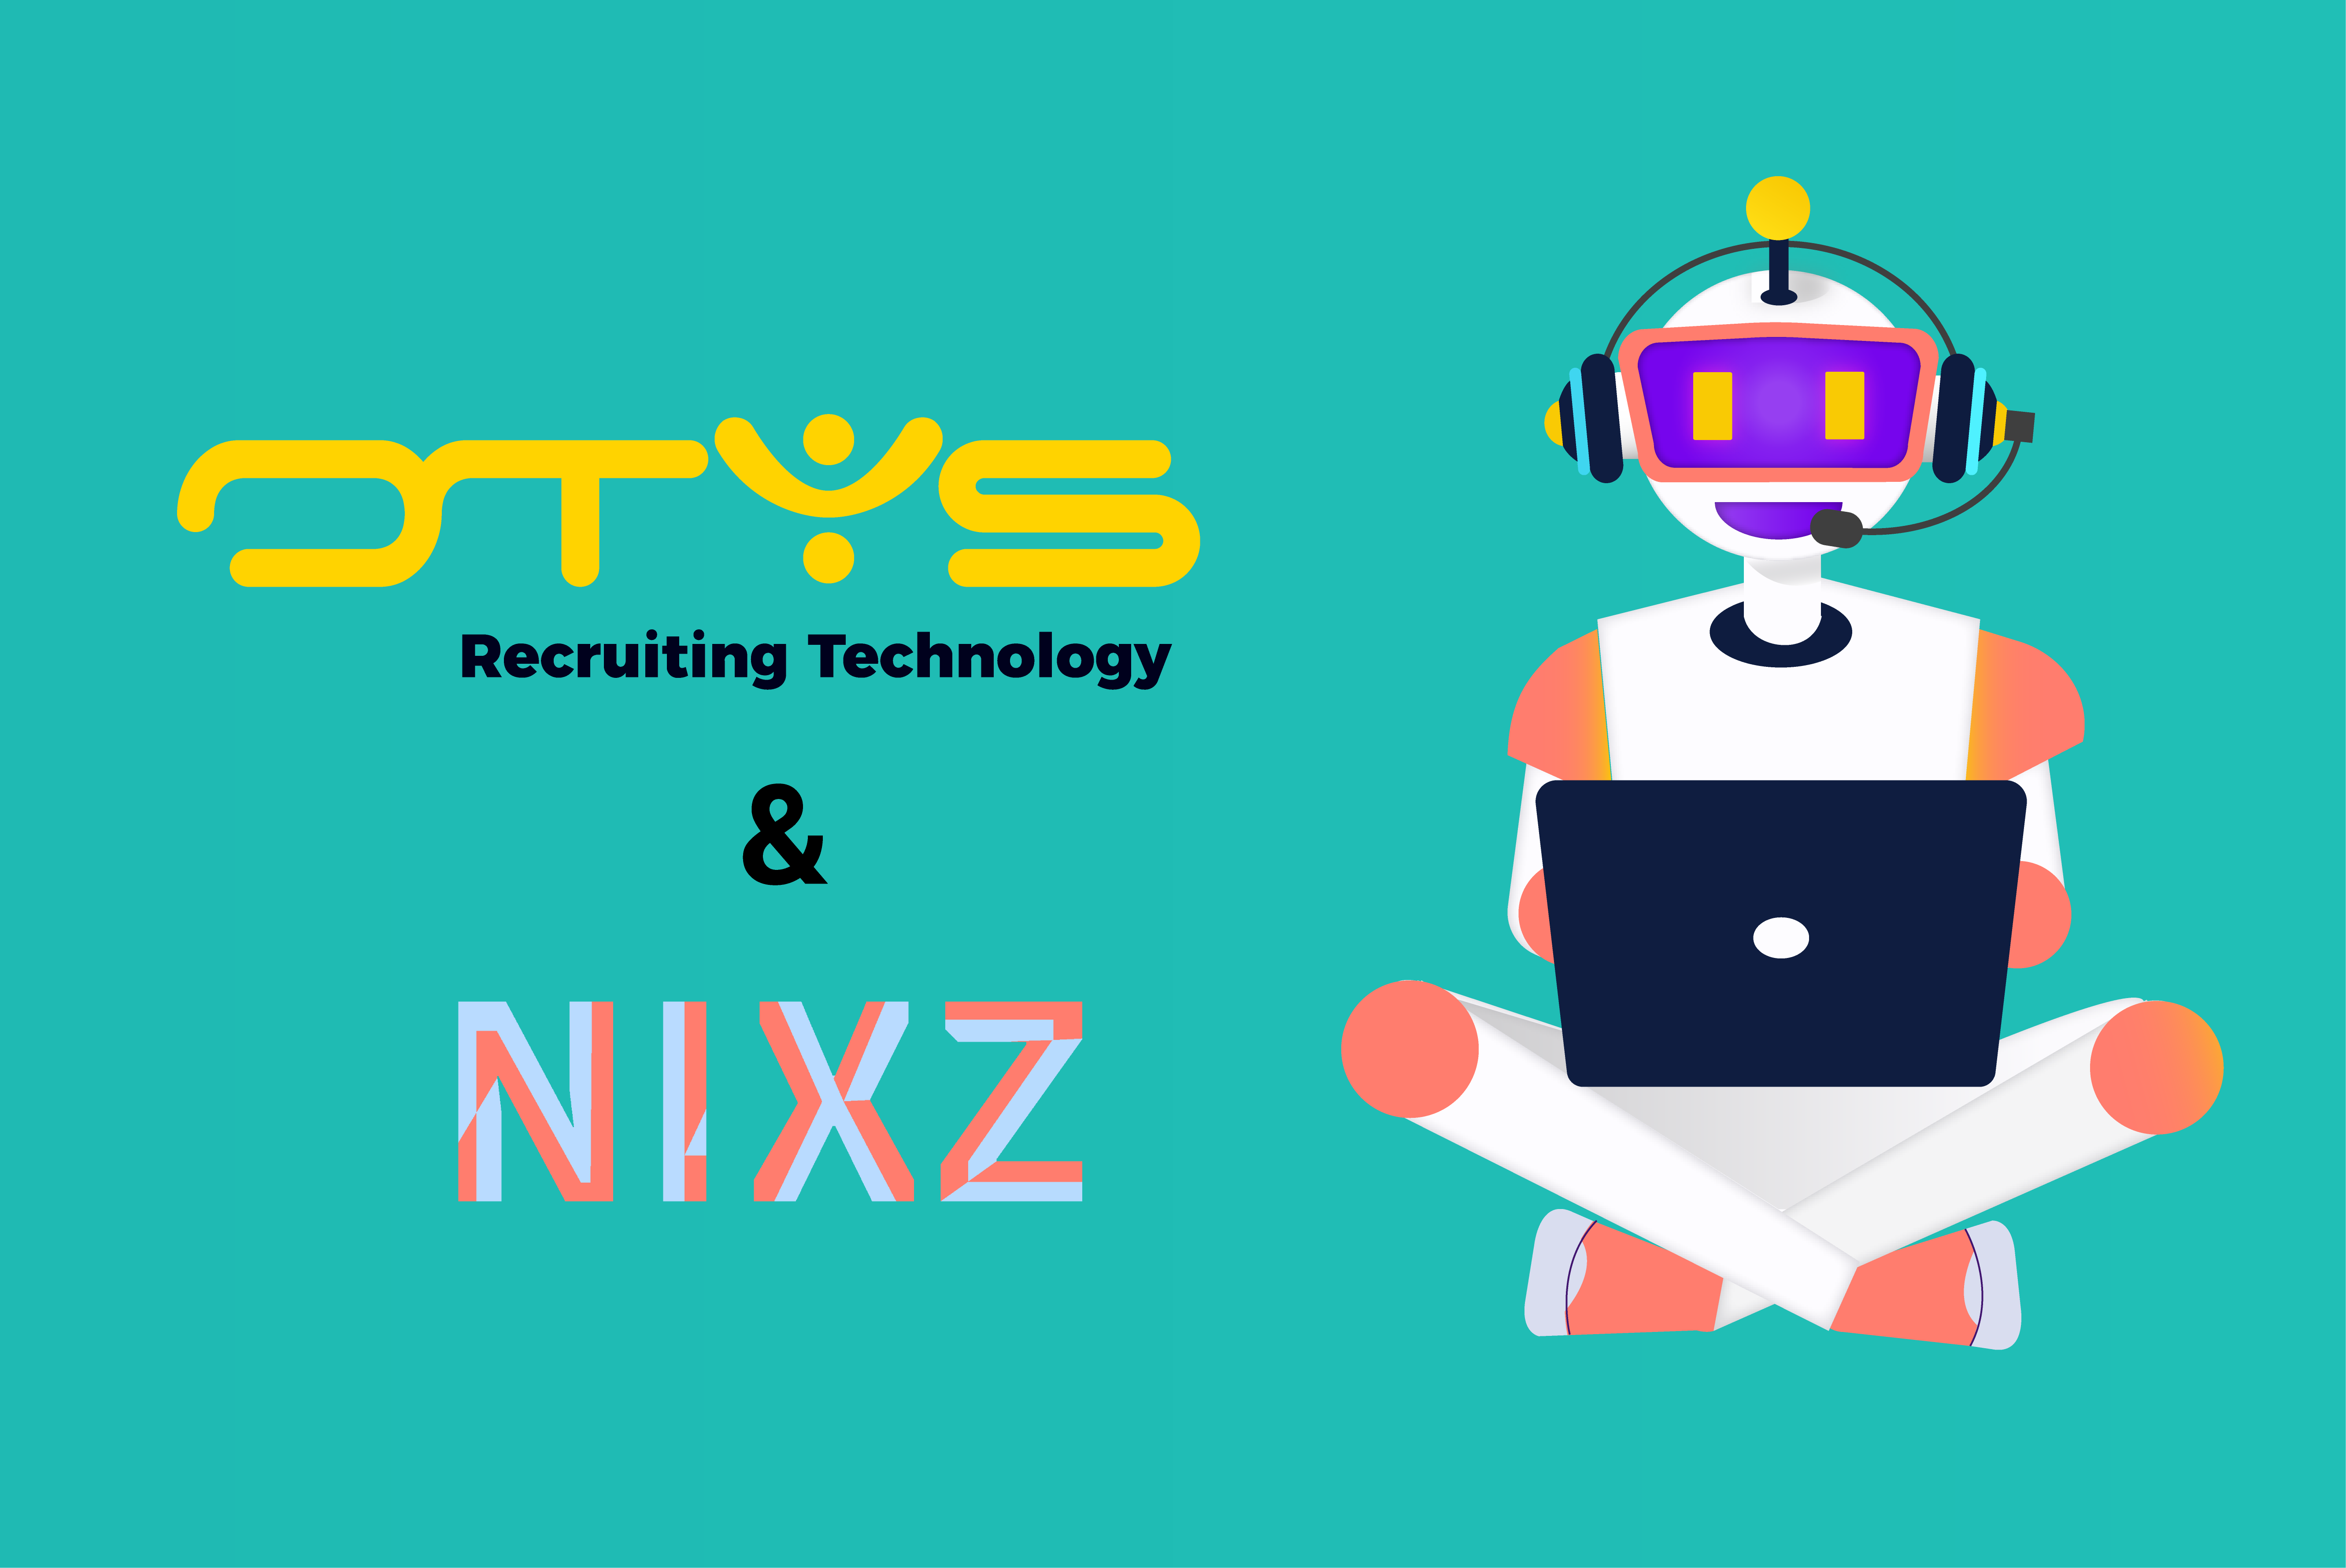 De NIXZ auto-updater voor OTYS